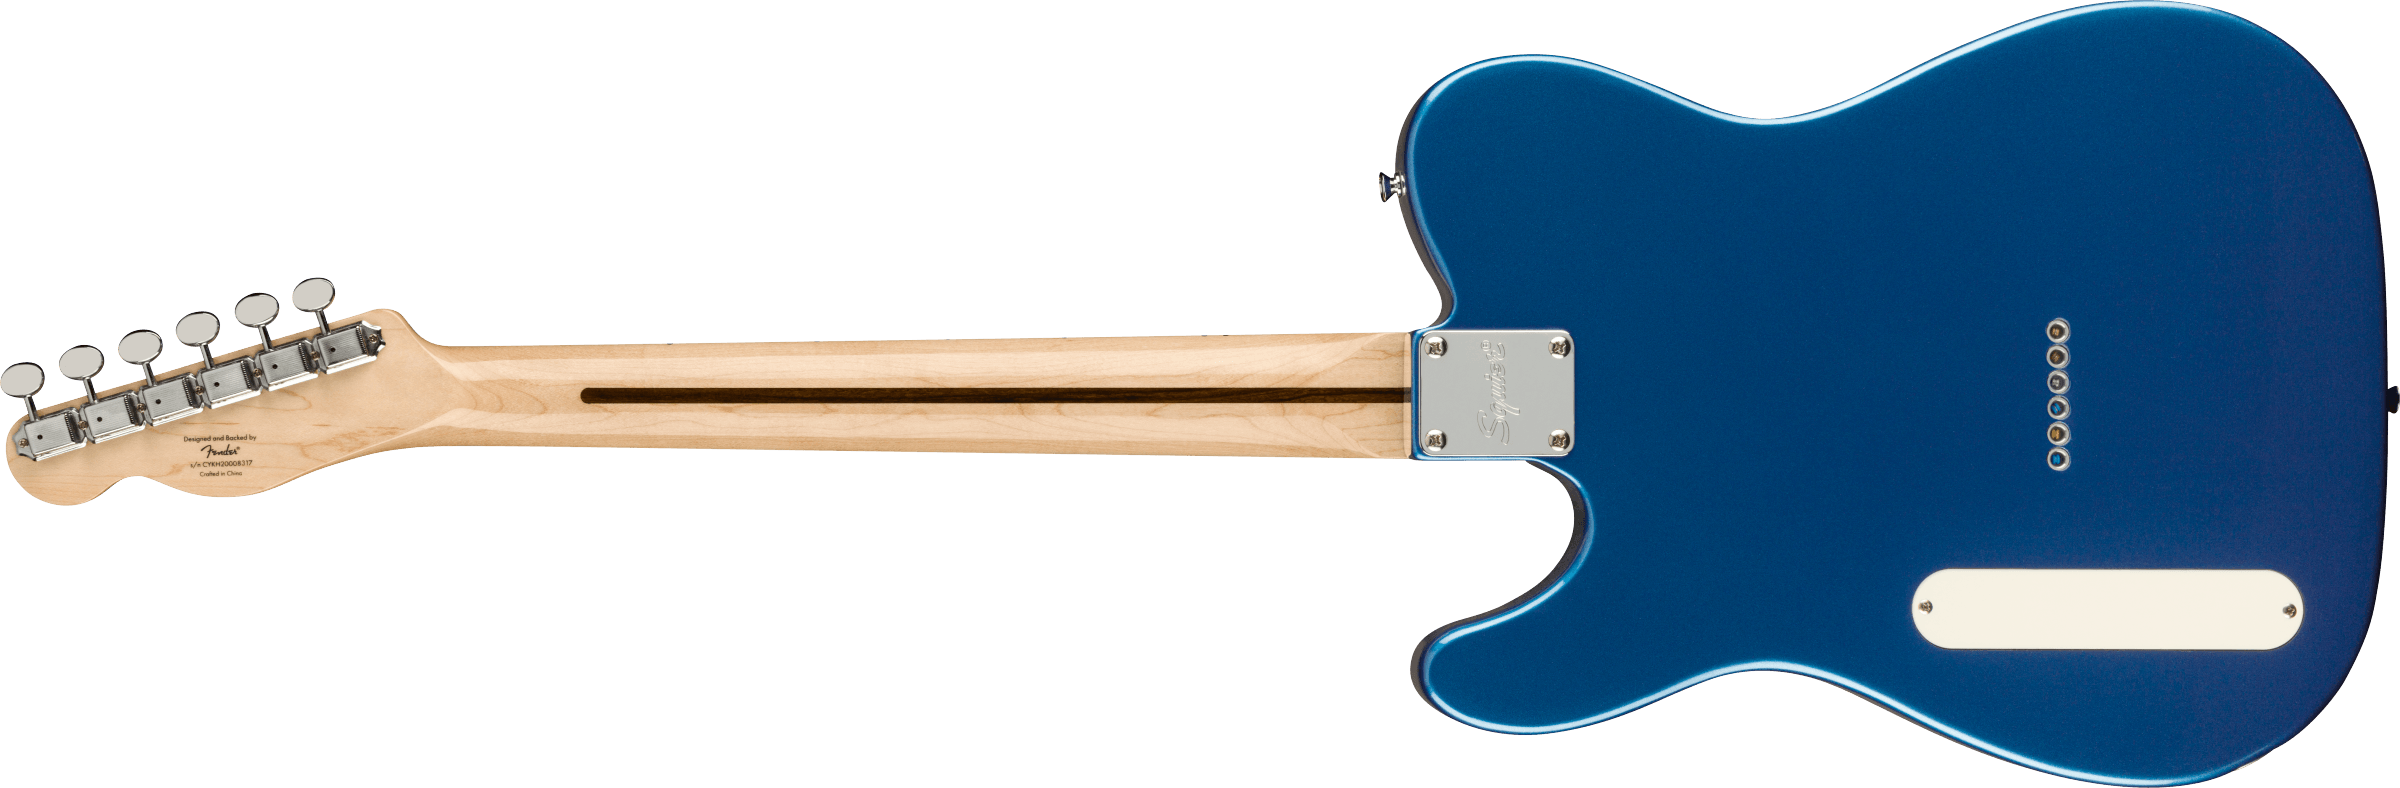 Squier Tele Cabronita Thinline Paranormal Ss Ht Mn - Lake Placid Blue - Guitarra eléctrica con forma de tel - Variation 1